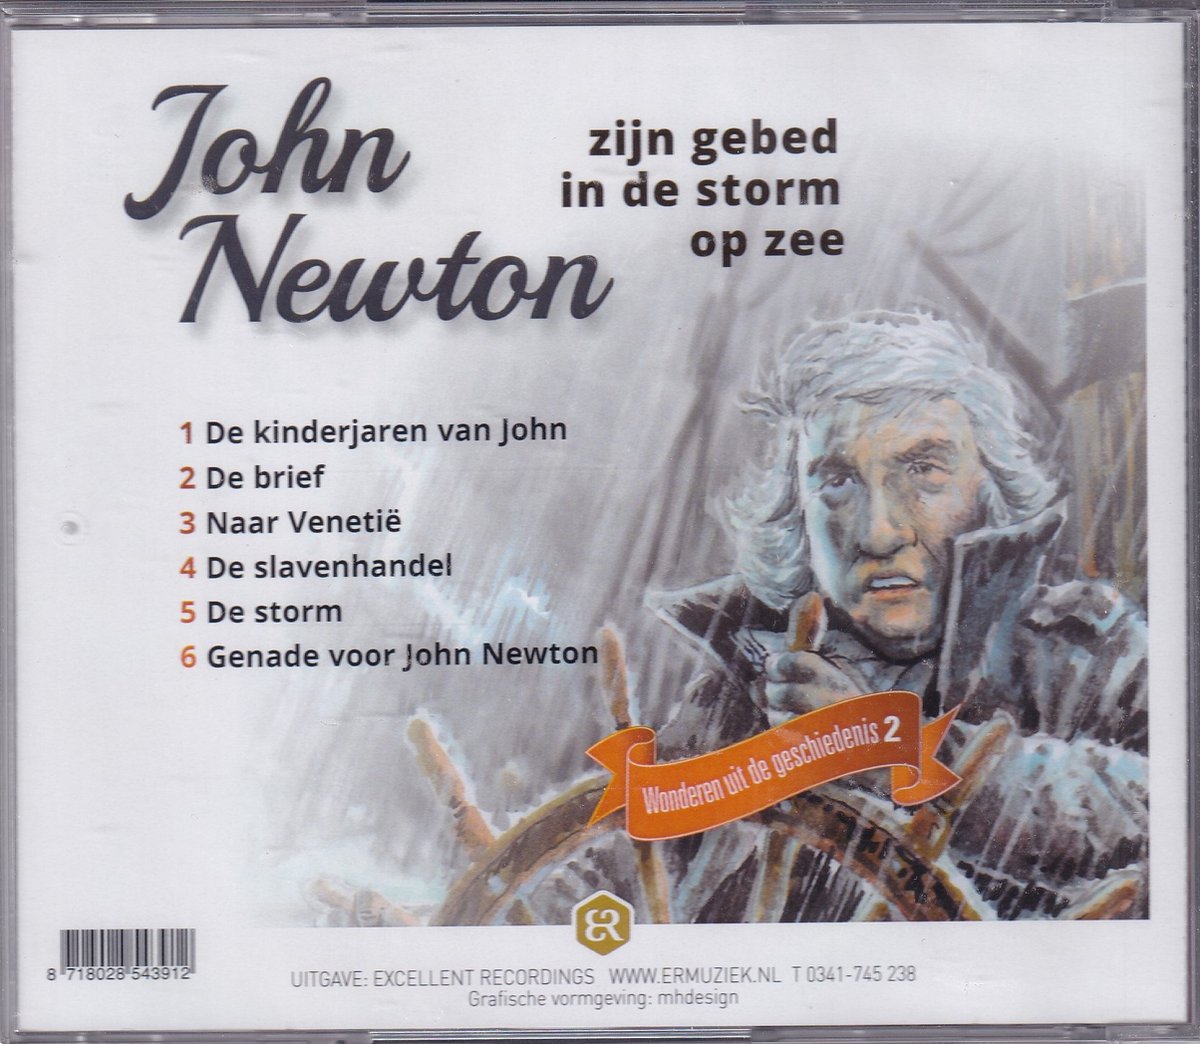 John Newton zijn gebed in de storm op zee